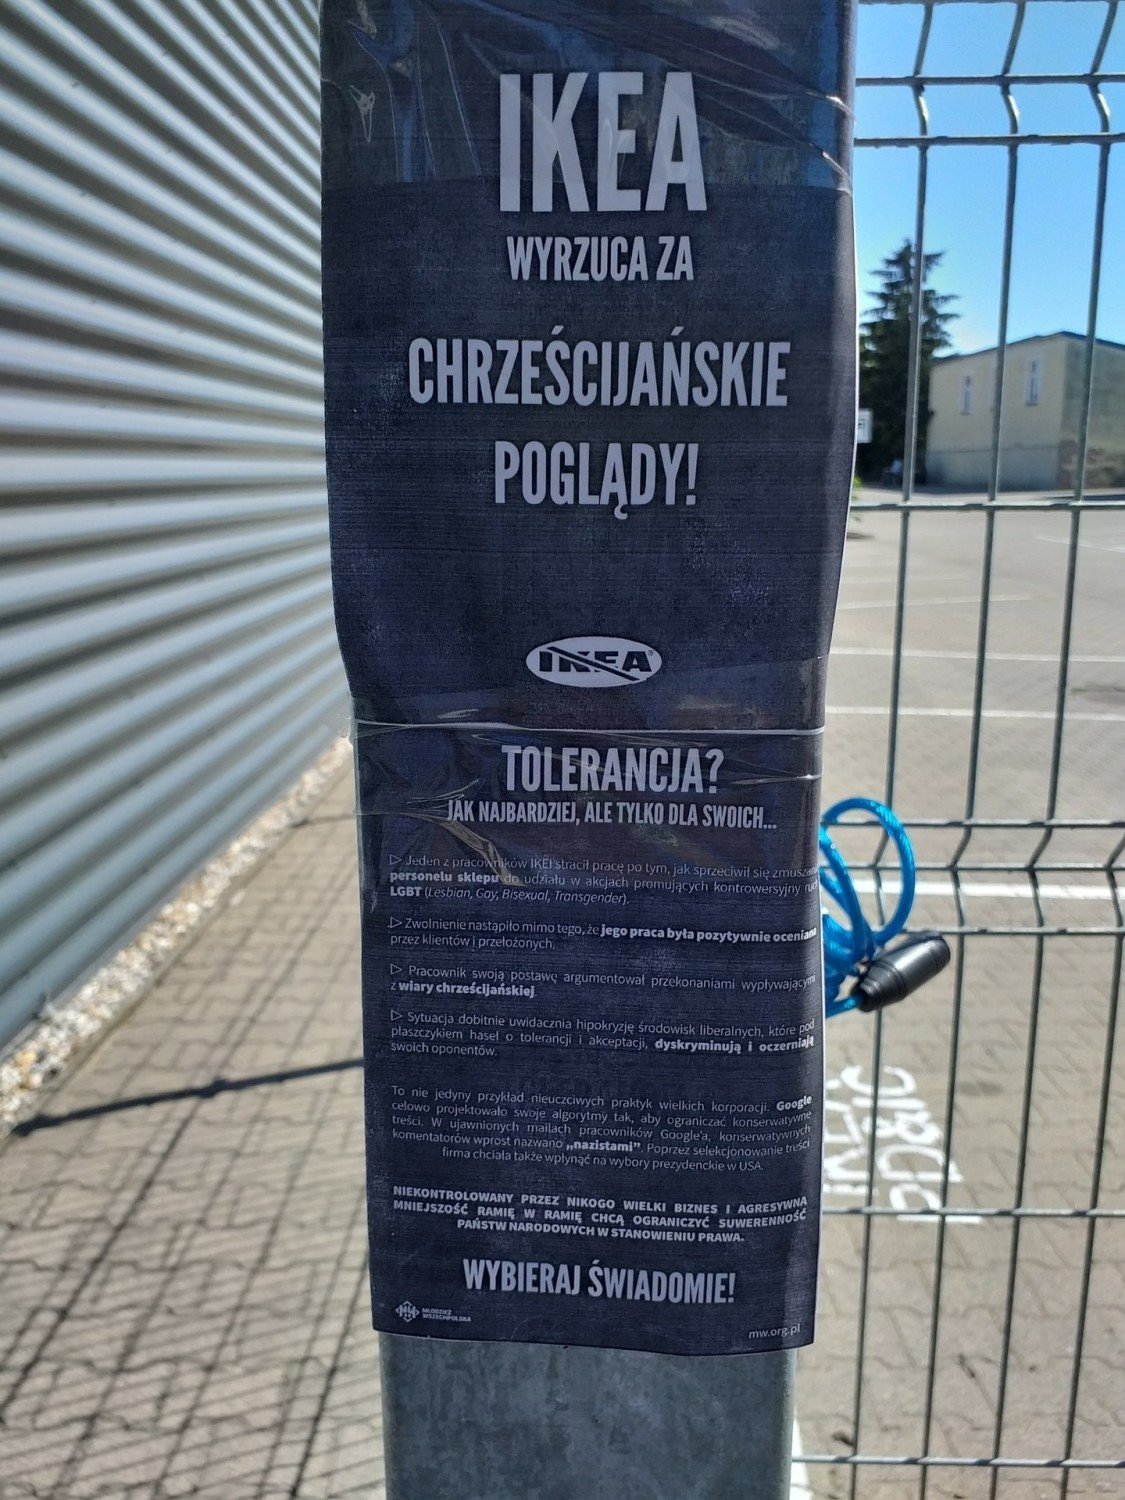 IKEA wyrzuca za chrześcijańskie poglądy" - akcja Młodzieży Wszechpolskiej |  Kraków Nasze Miasto